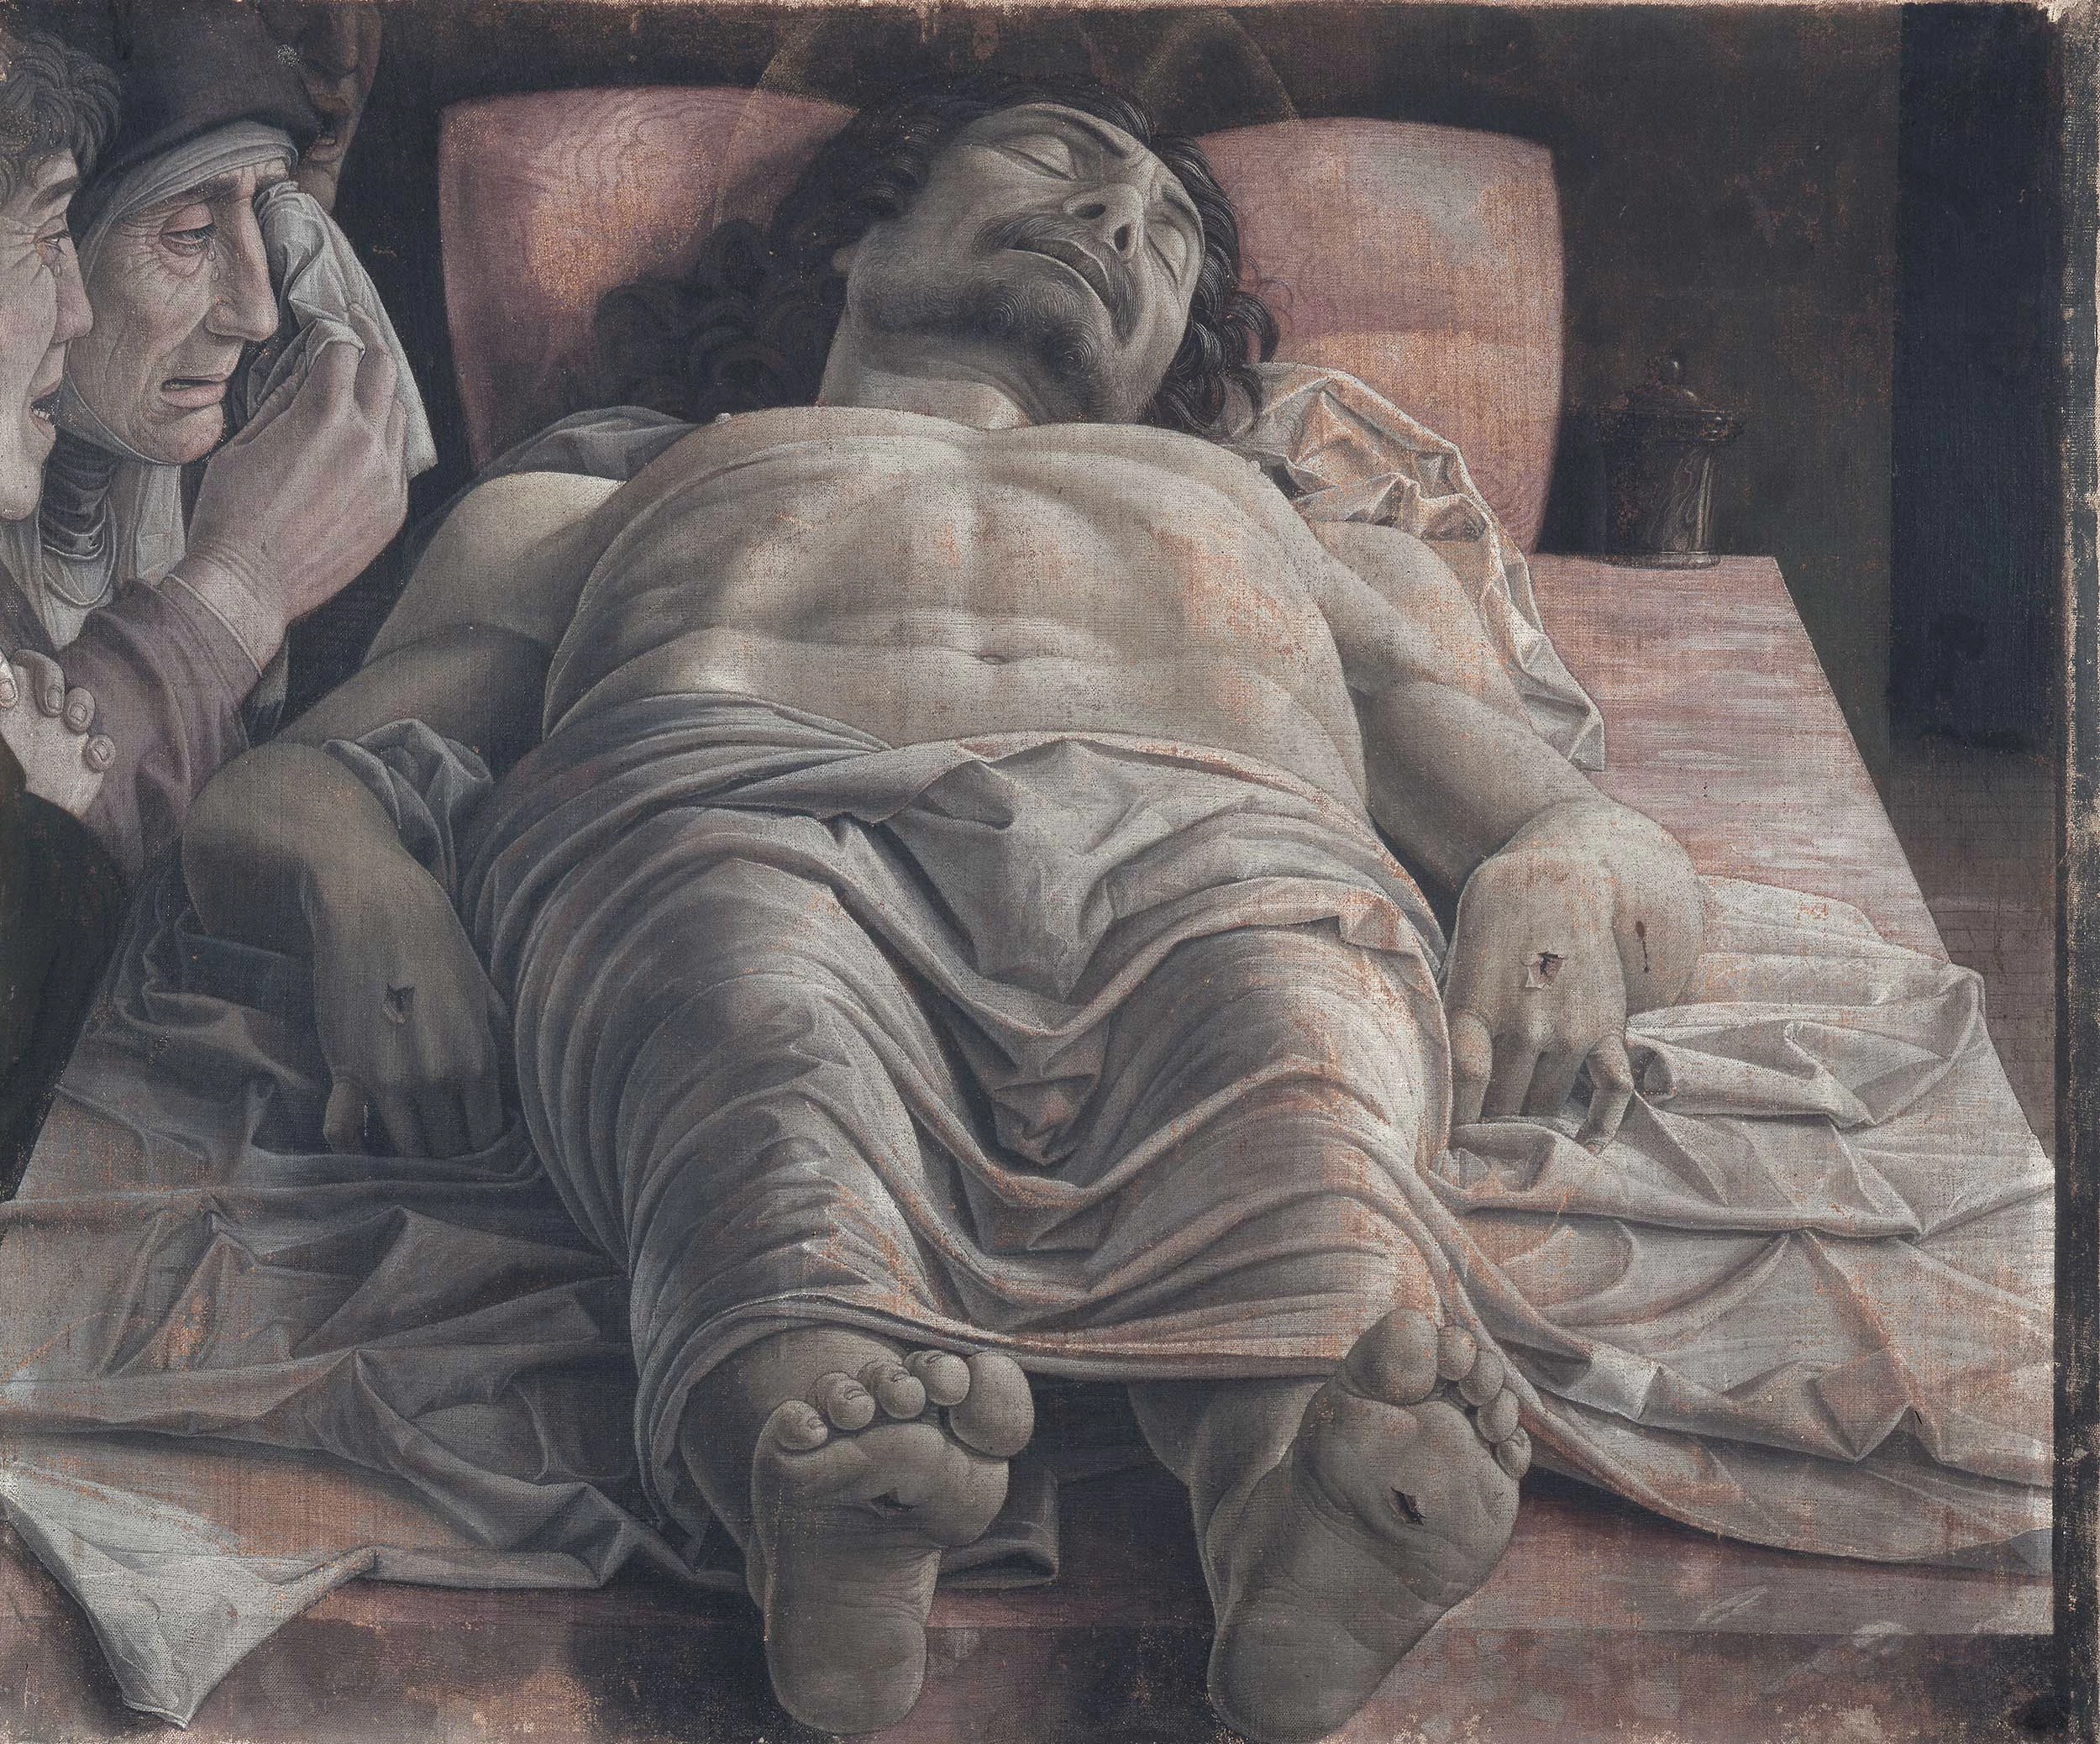 Andrea Mantegna, The Artists